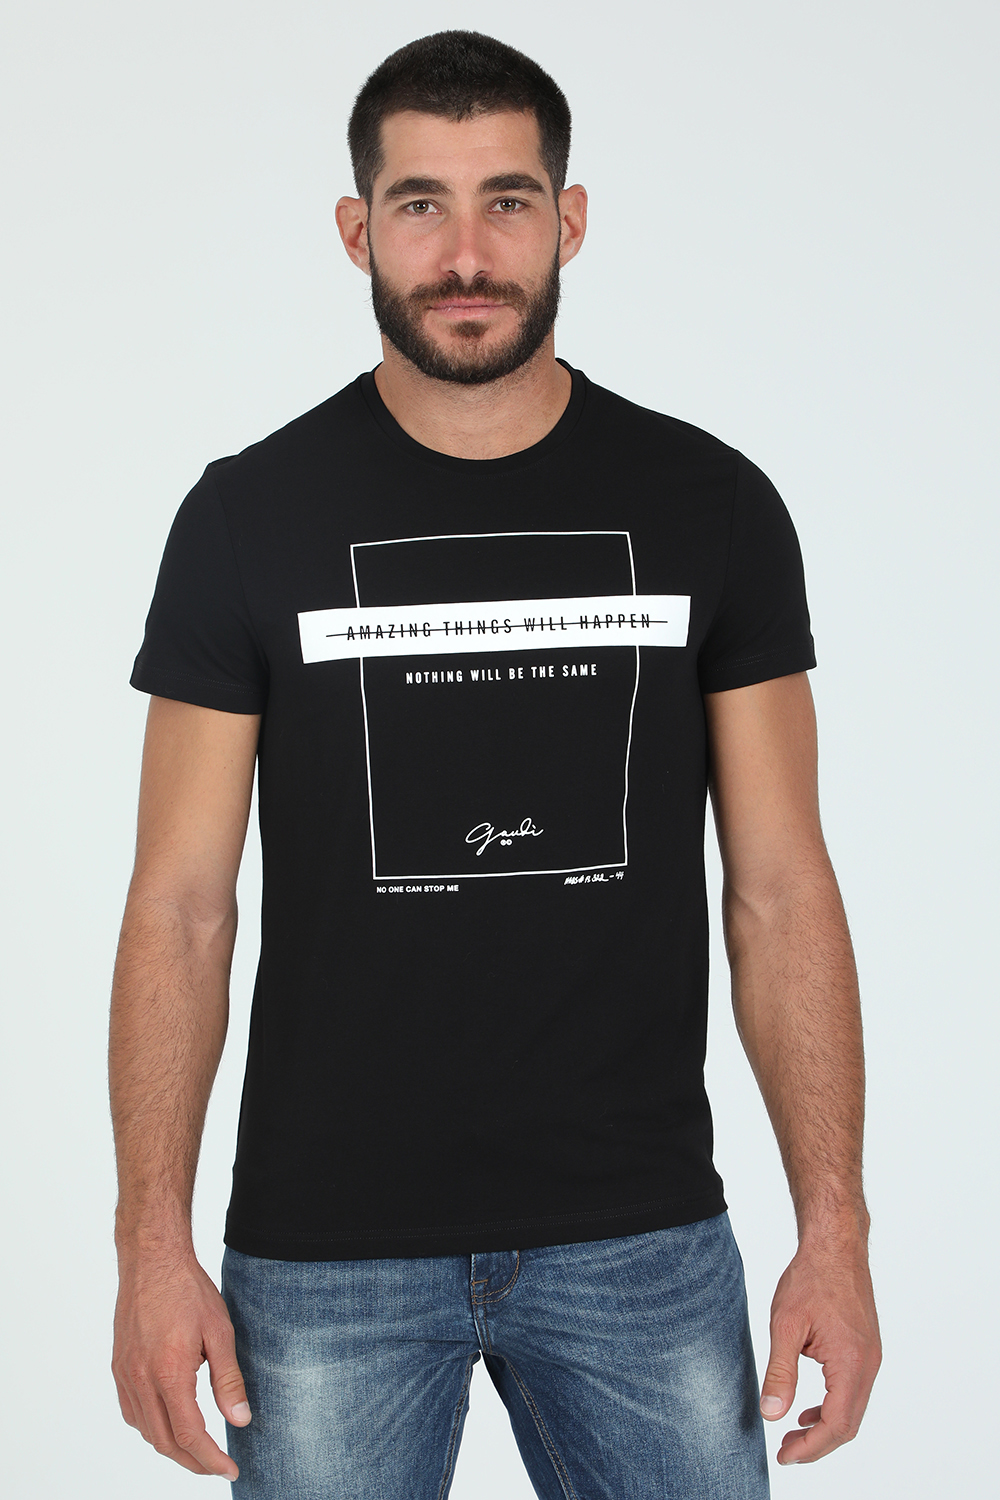 Ανδρικά/Ρούχα/Μπλούζες/Κοντομάνικες GAUDI - Ανδρικό t-shirt GAUDI μαύρο λευκό